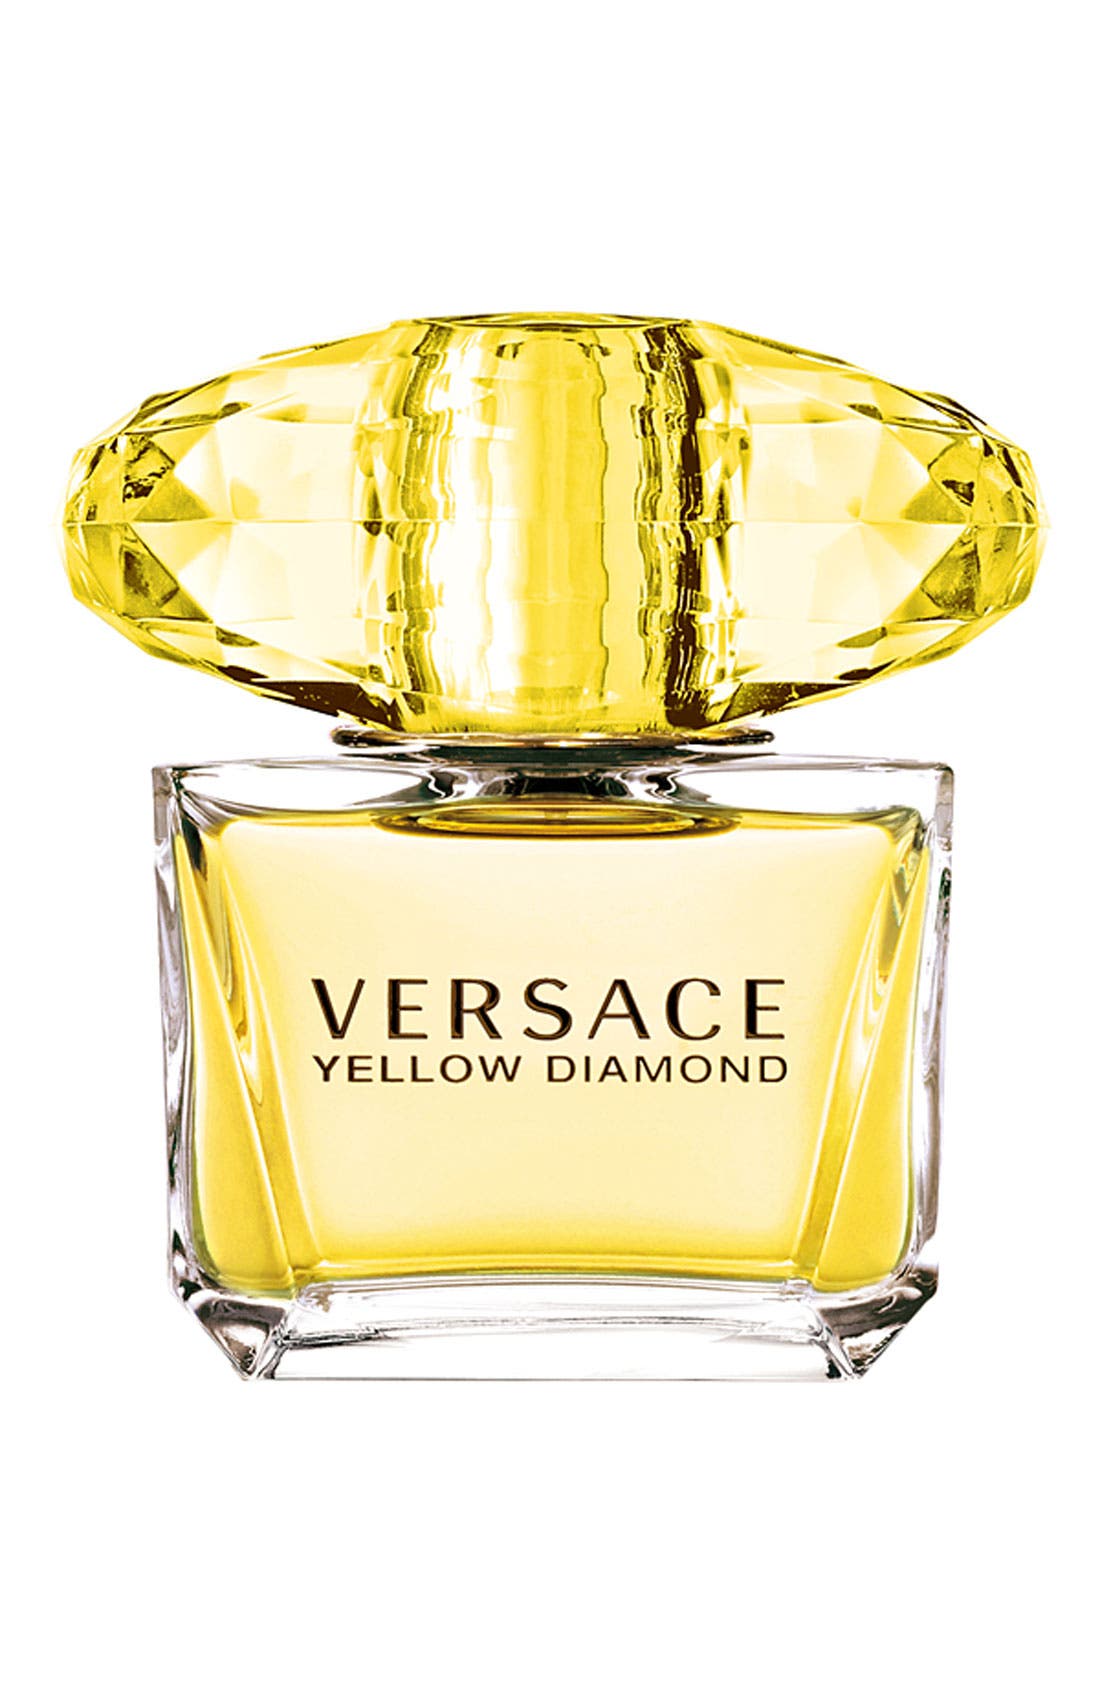 Versace 'Yellow Diamond' Eau de Toilette at Nordstrom, Size 0.3 Oz